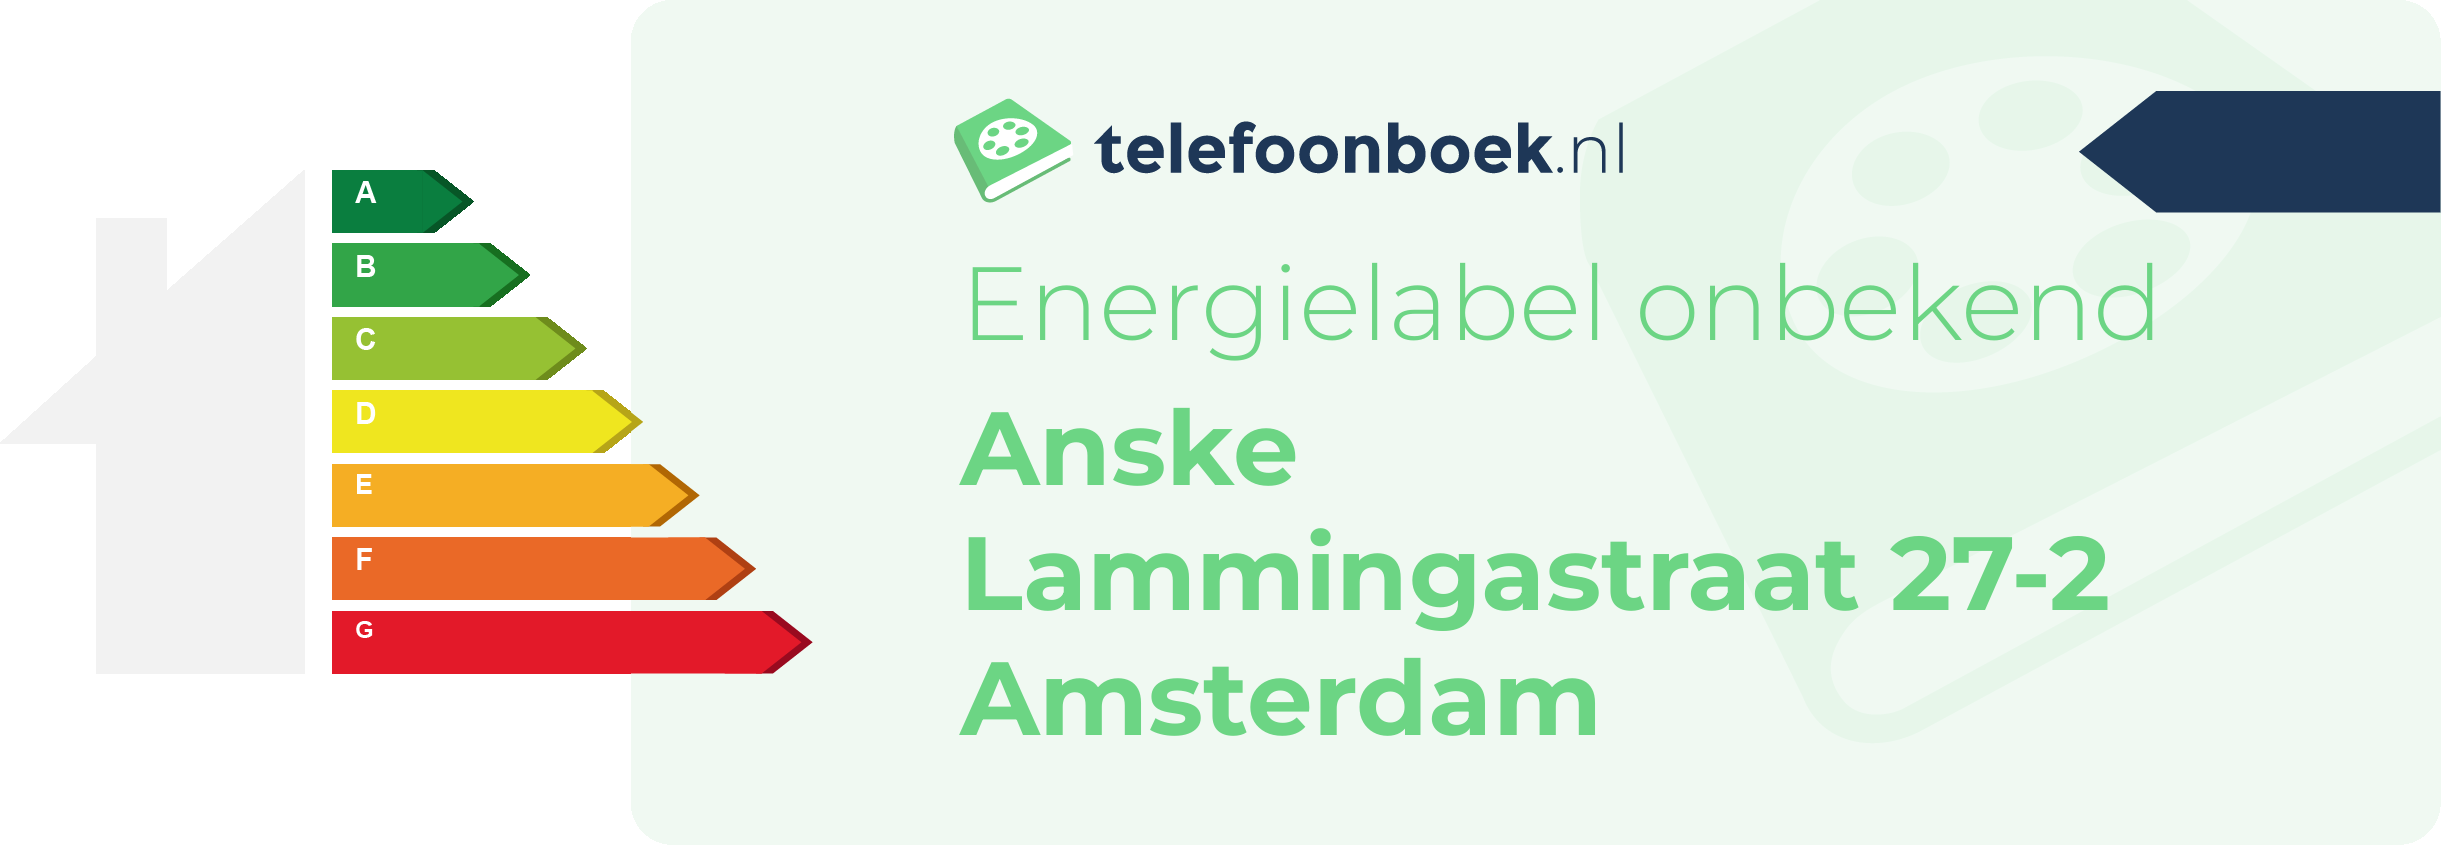 Energielabel Anske Lammingastraat 27-2 Amsterdam